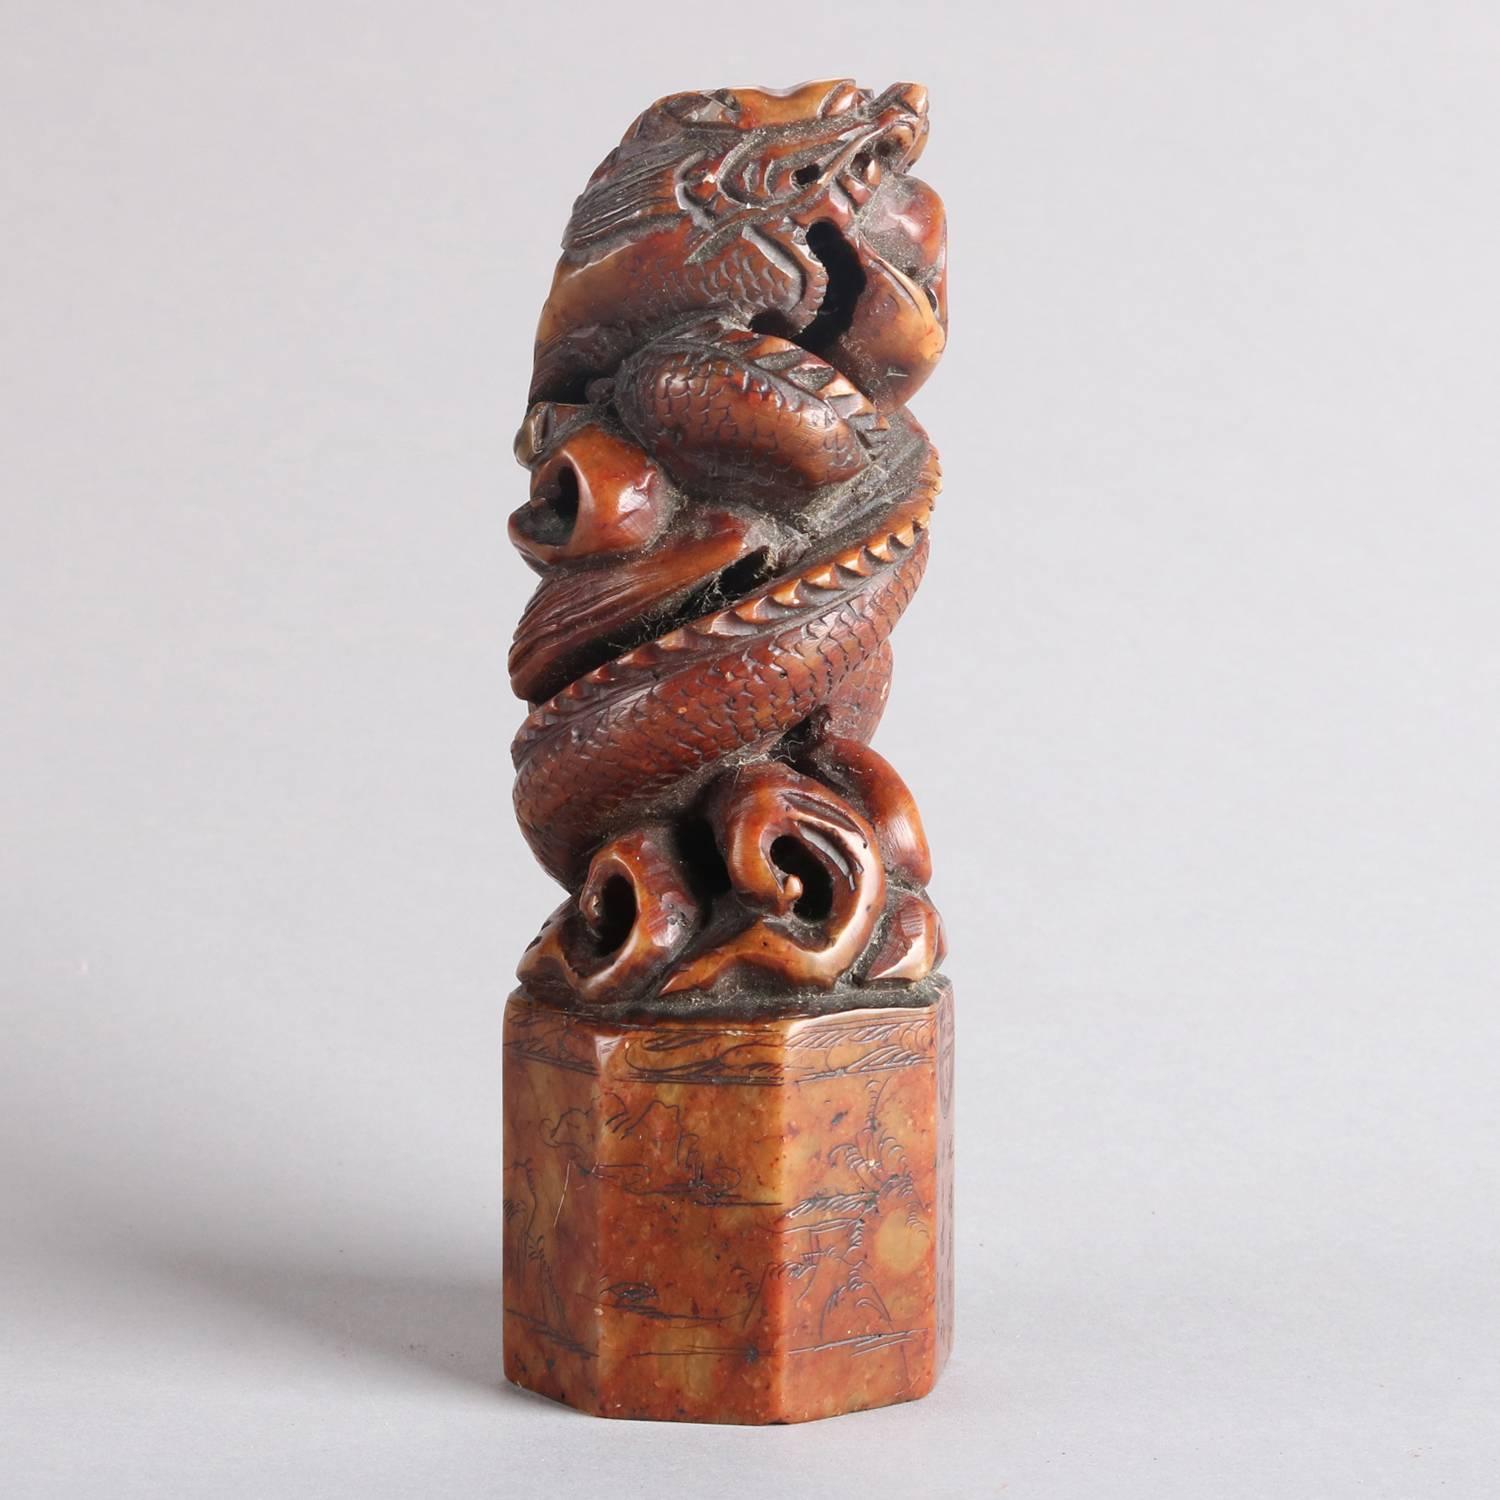 Antike chinesische figurale geschnitzte und eingeschnittene Speckstein-Skulptur Wachs chop Siegel oder Stempel zeigt verflochtene Drachen, chop Marken, 20.

Maße: 5,75